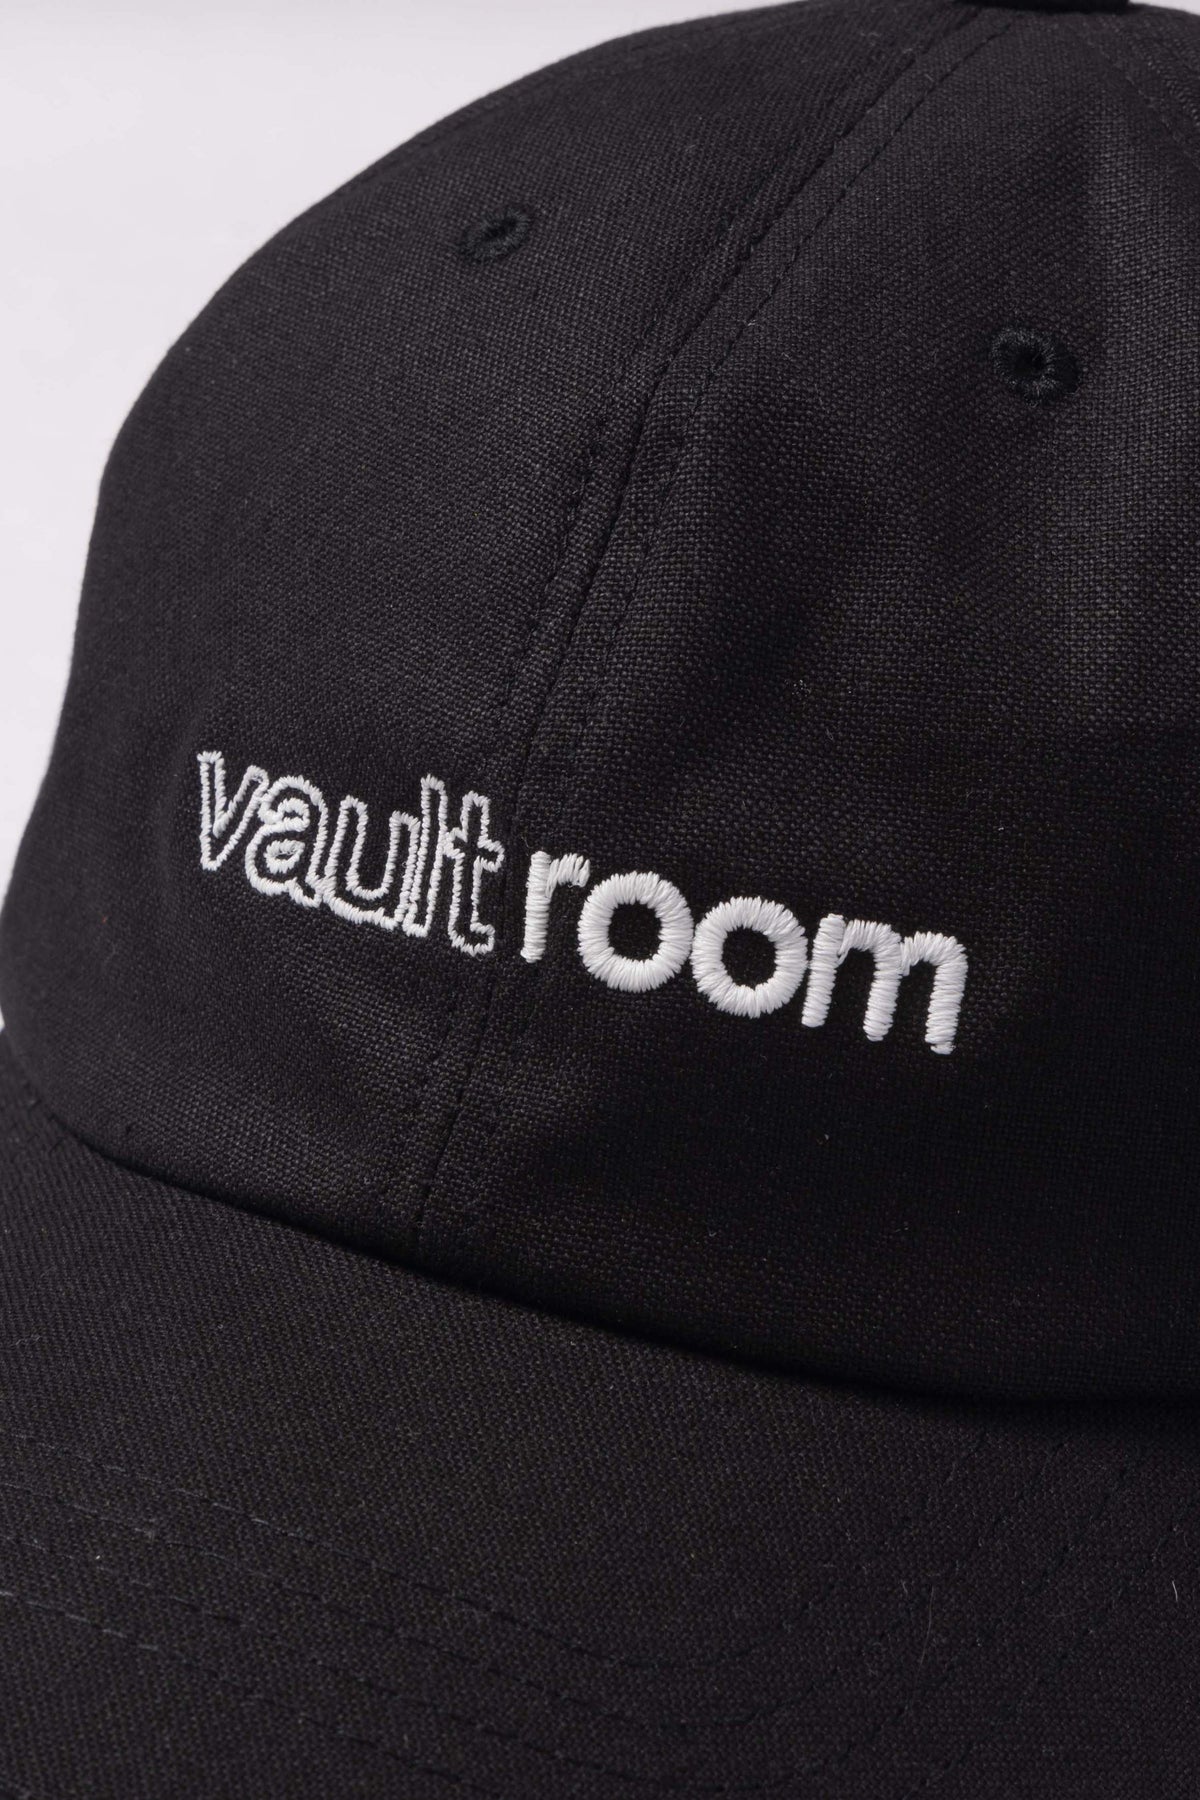 新品未開封ですvaultroom LOGO CAP / BLK